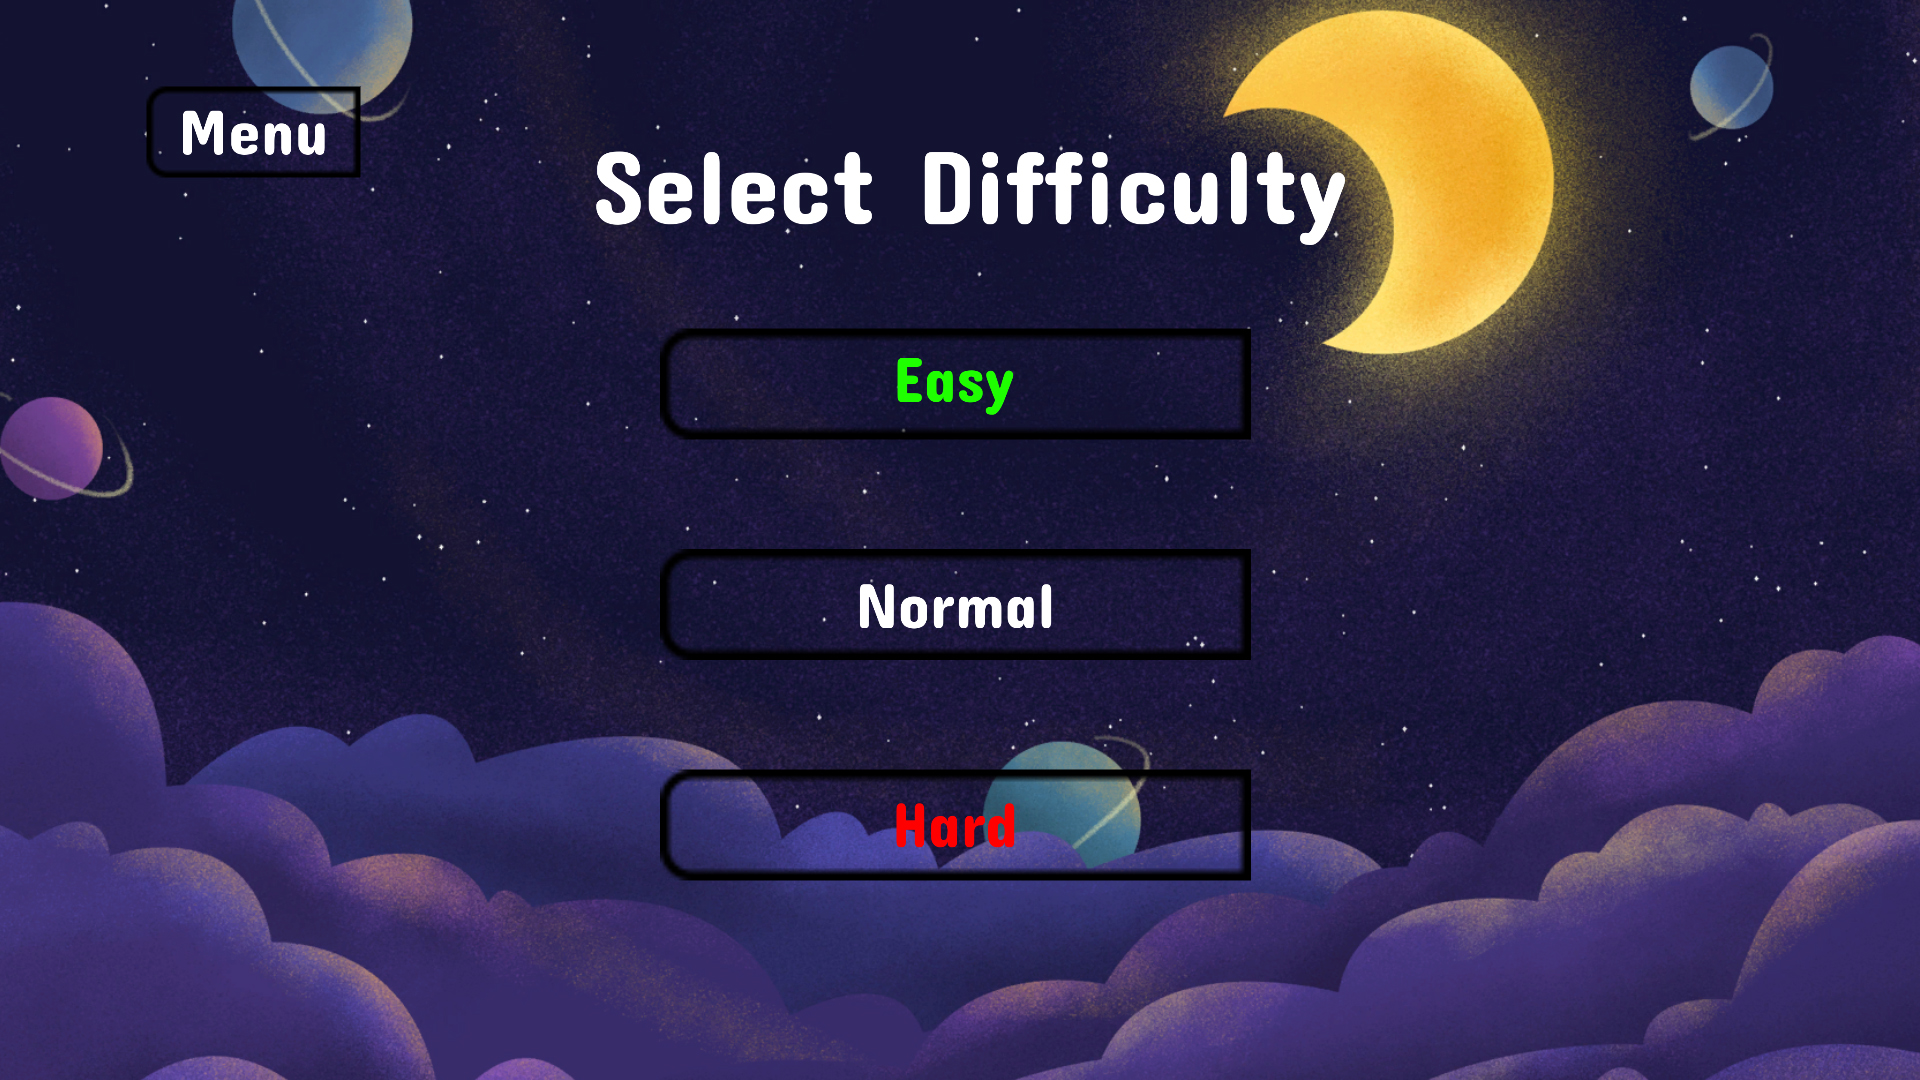 Word Typing Game screenshot